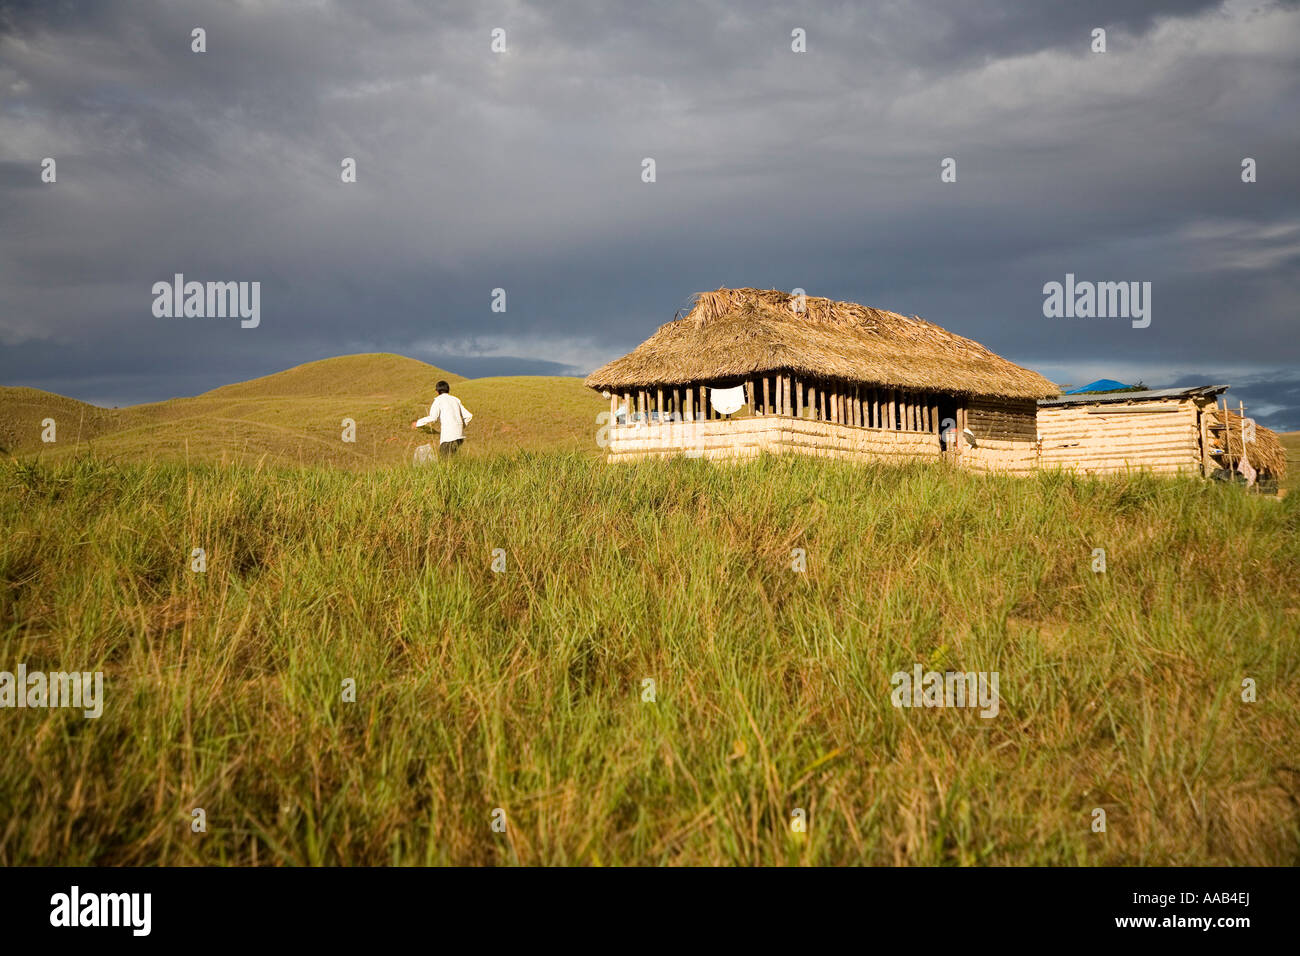 Hut in the Gran Sabana,  Venezuela Stock Photo